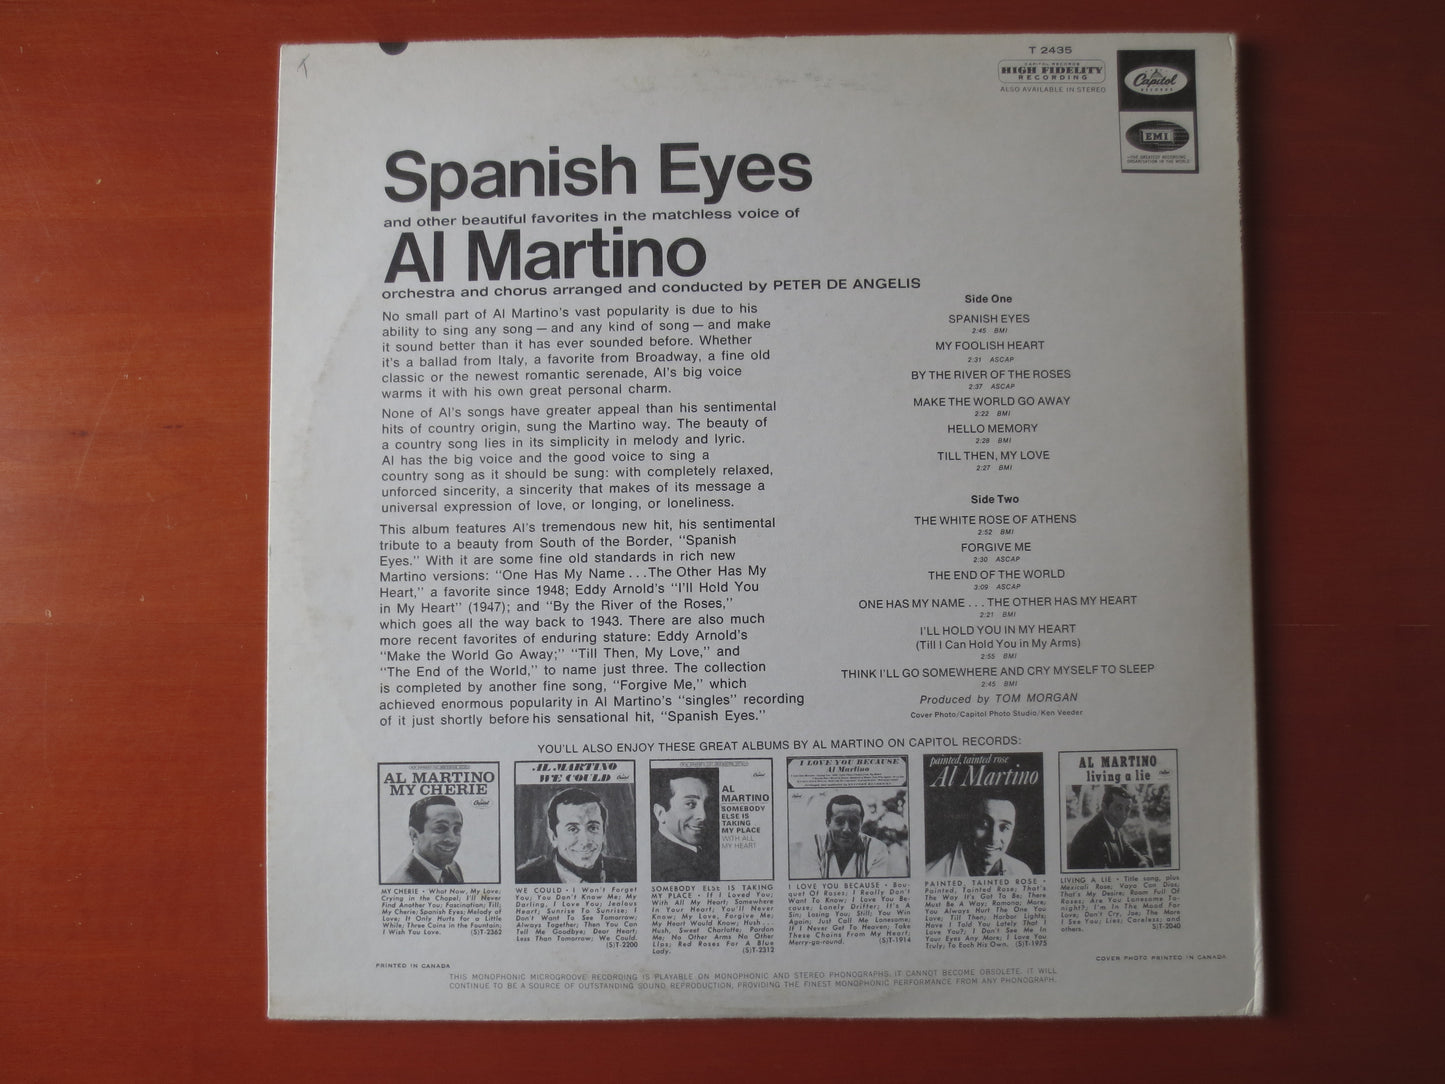 AL MARTINO, SPANISH Eyes, Al Martino Album, Al Martino Vinyl, Al Martino Lp, Vintage Vinyl, Vinyl Album, 1966 Record